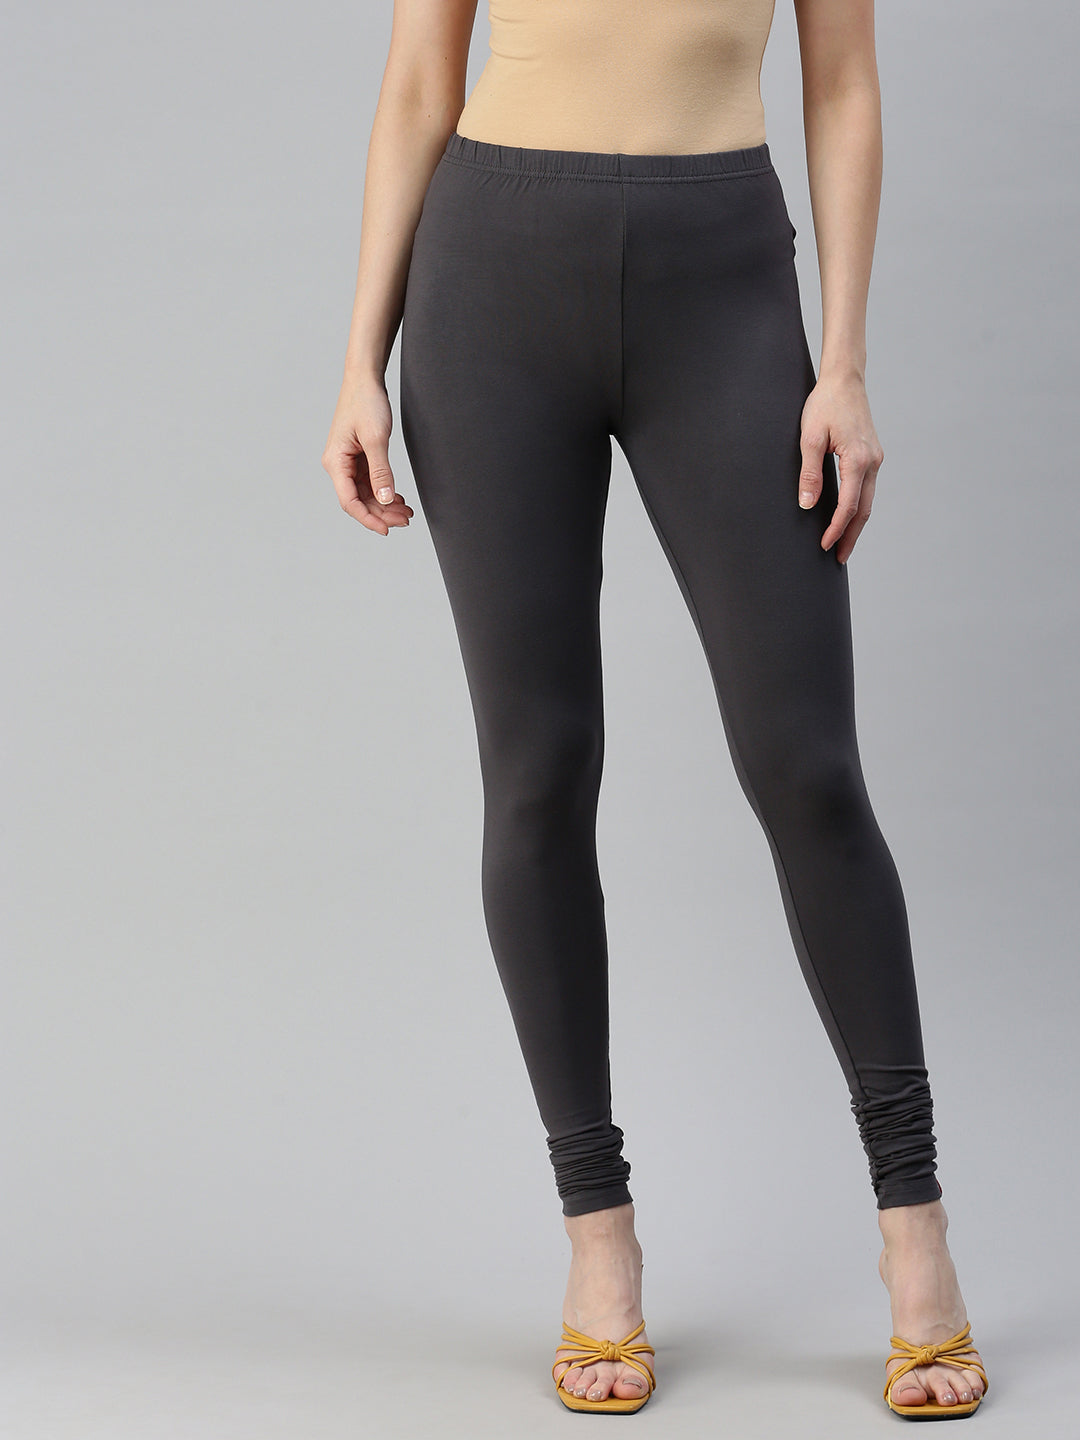 Prisma Full Length Slate Grey - S, Slate, Women Leggings